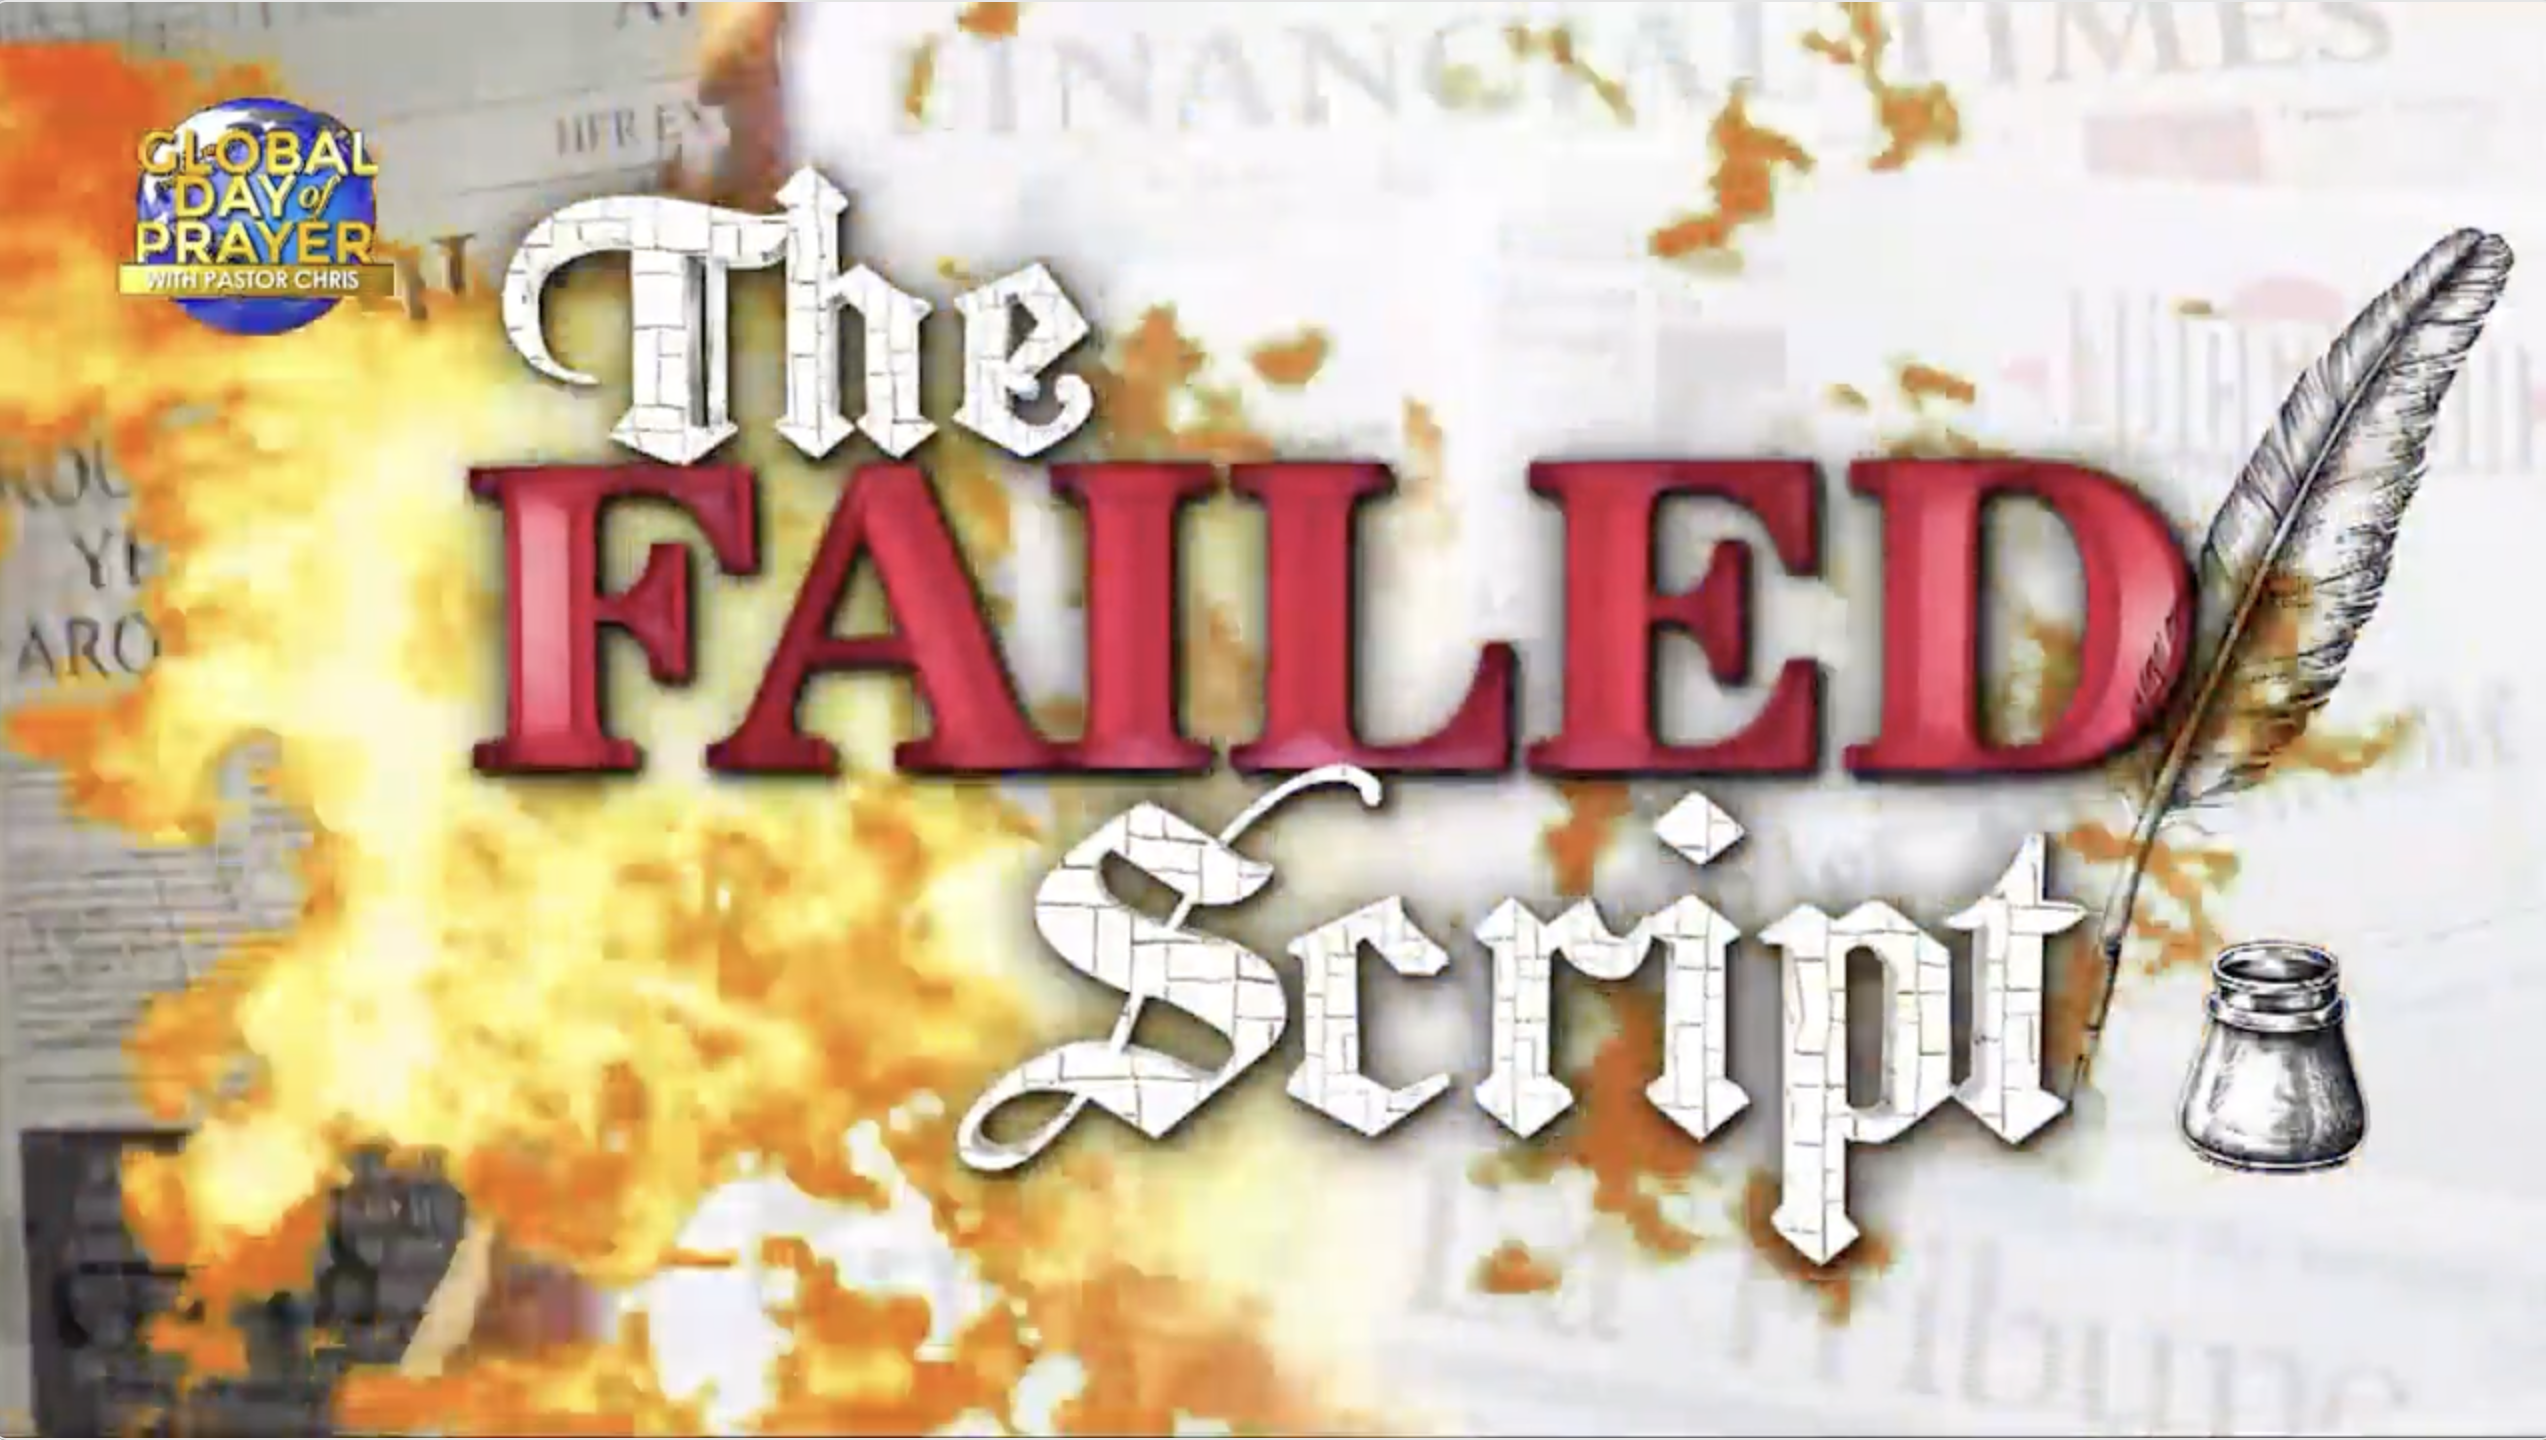 The Failed Script